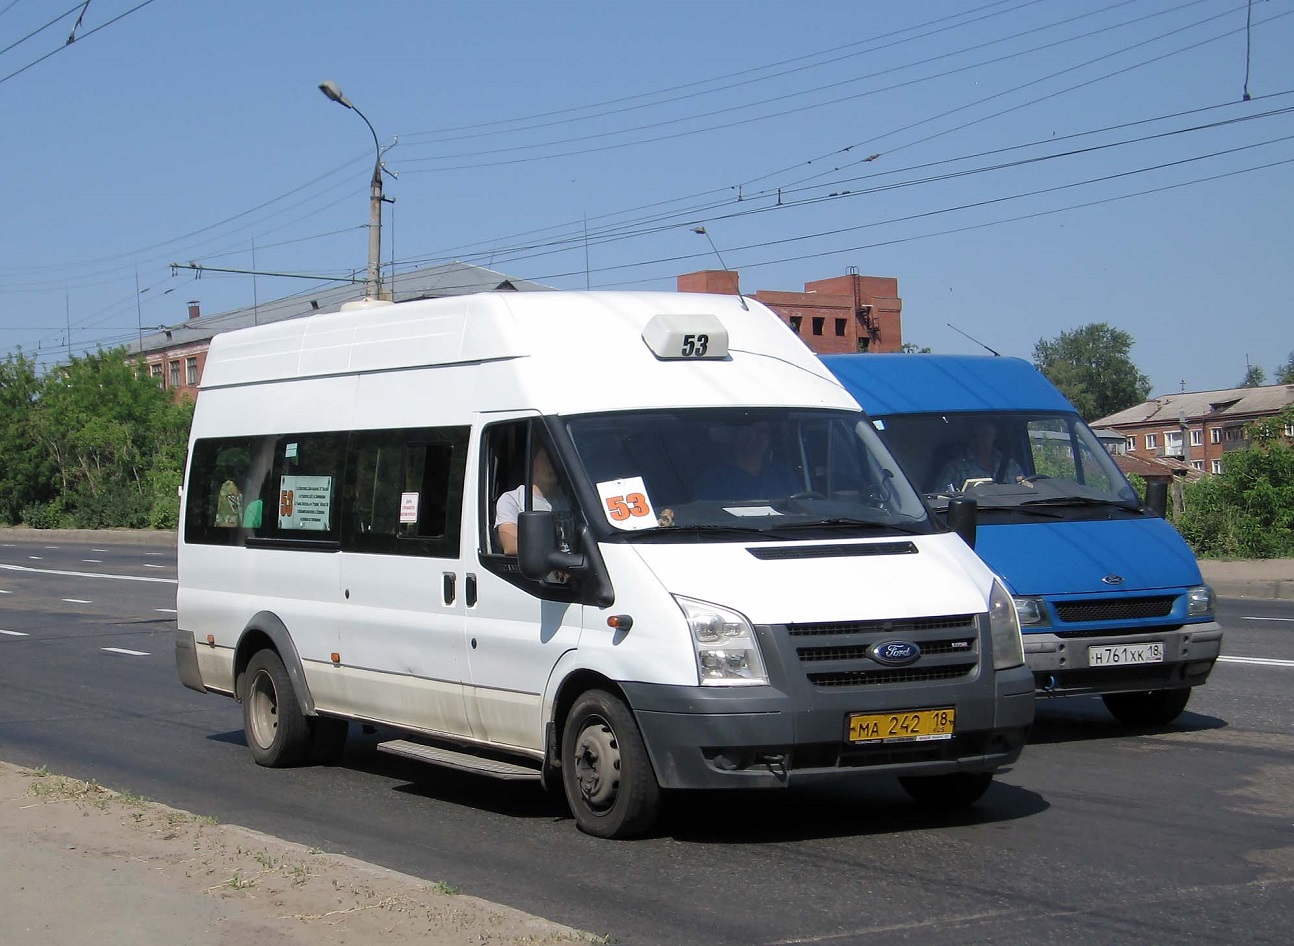 Izhevsk, Nidzegorodec-22270 (Ford Transit) # МА 242 18